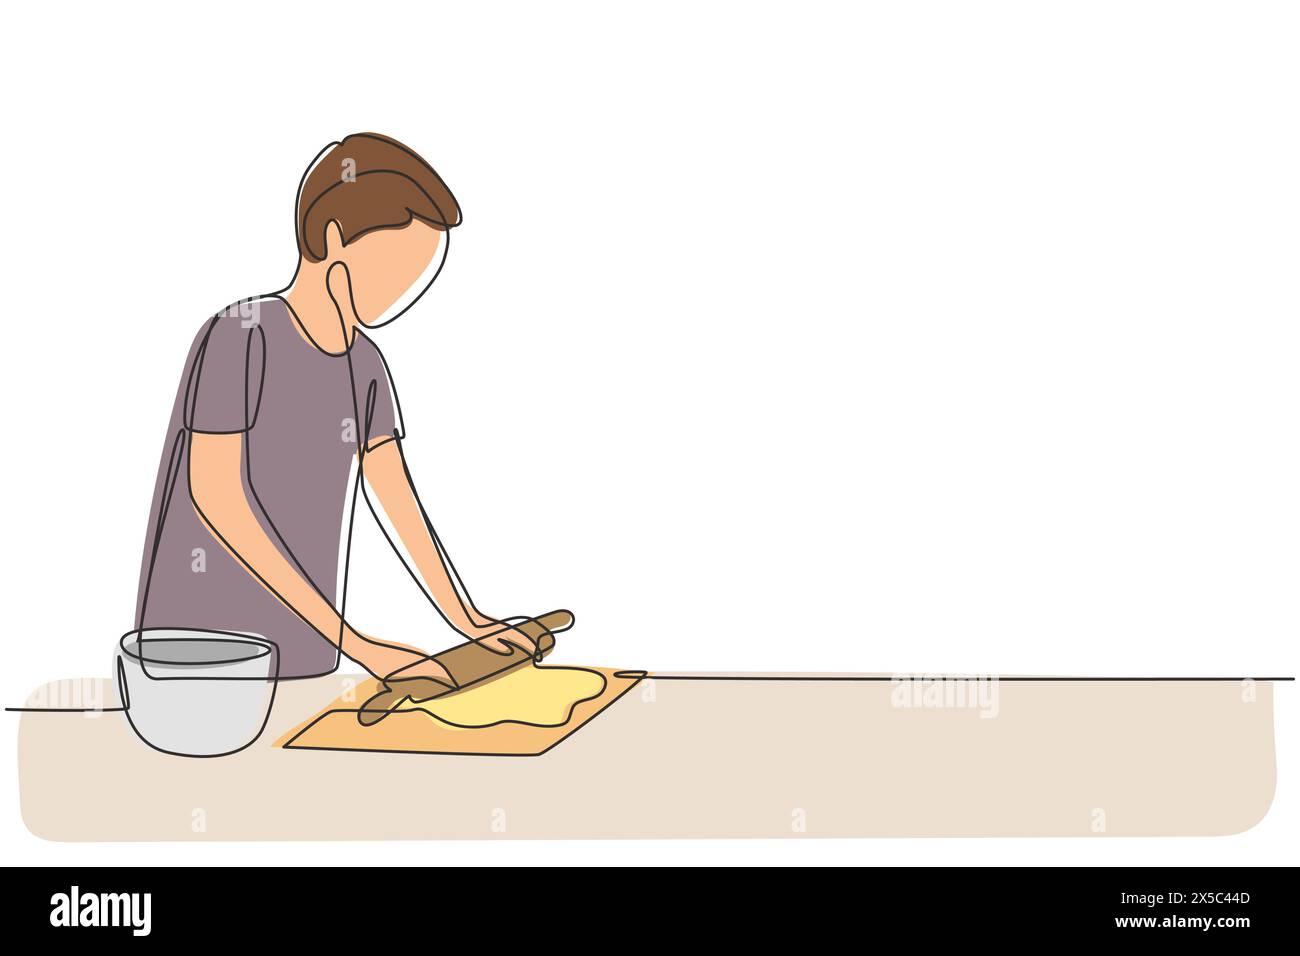 Linea singola continua che disegna il giovane che prepara l'impasto per biscotti utilizzando il mattarello sul comodo tavolo da cucina. Preparare panetteria e pizza fatta in casa. Dynami Illustrazione Vettoriale